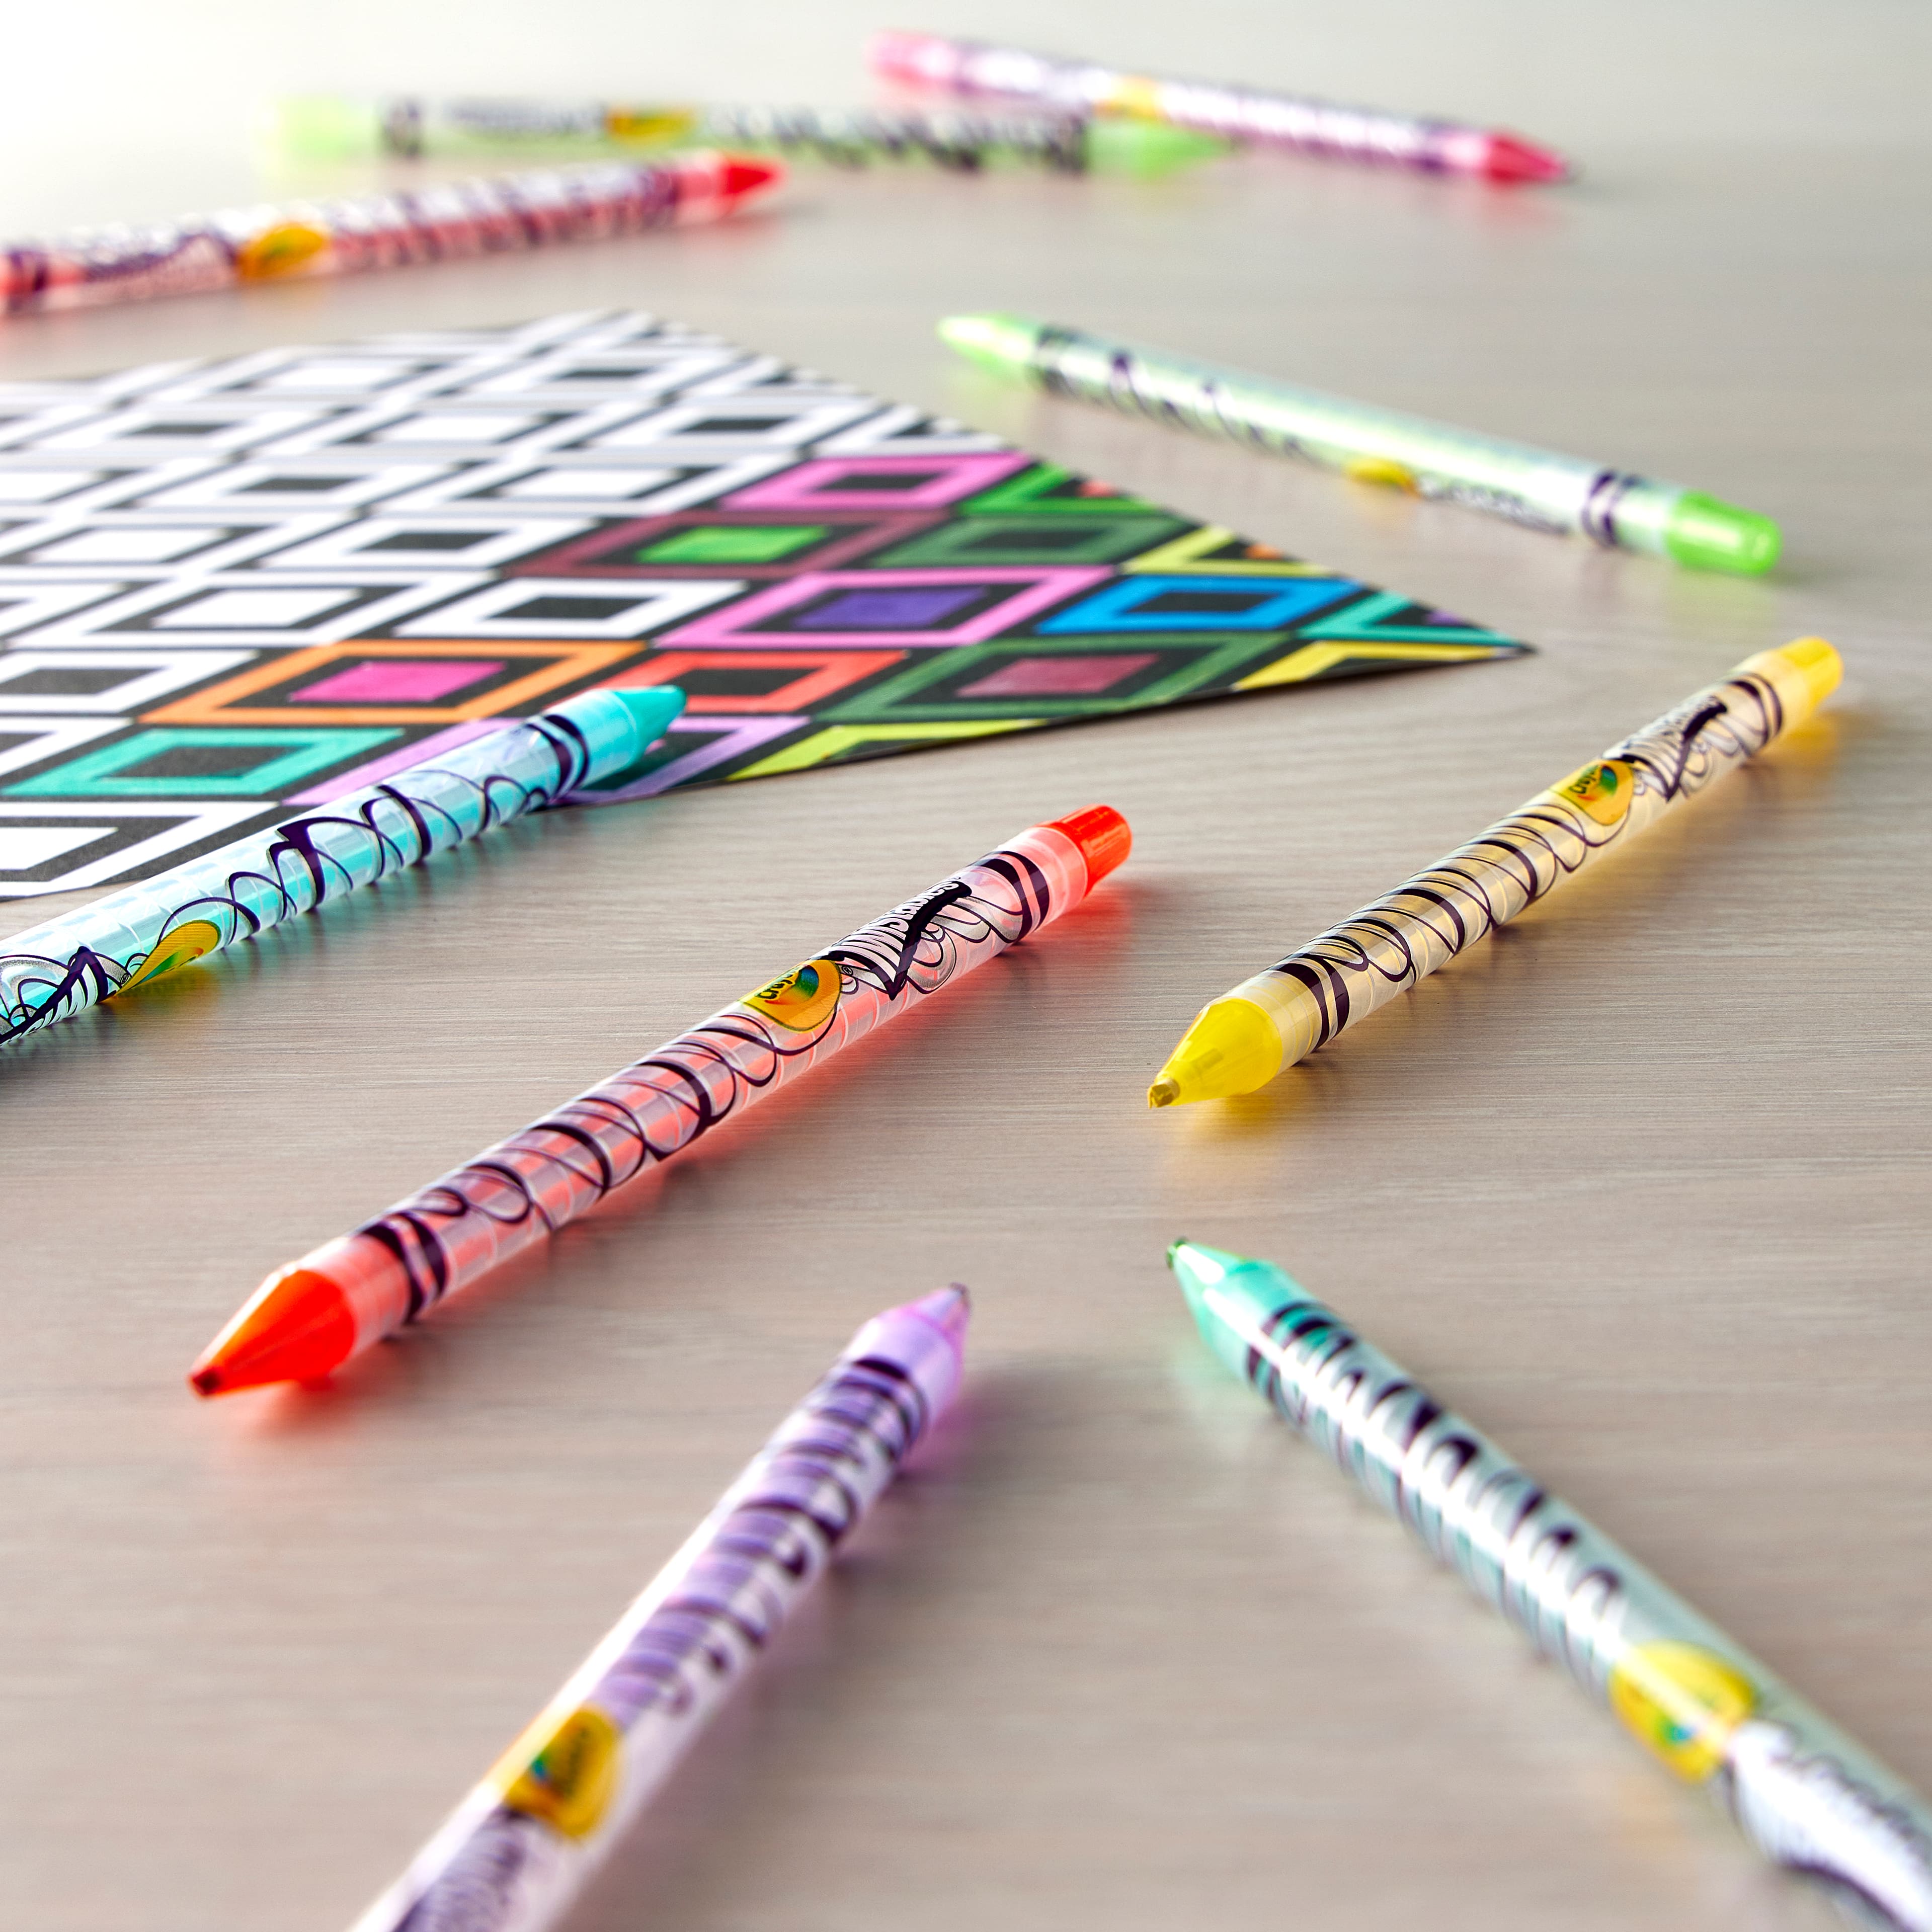 Crayola&#xAE; Twistables Colored Pencils, 30ct.